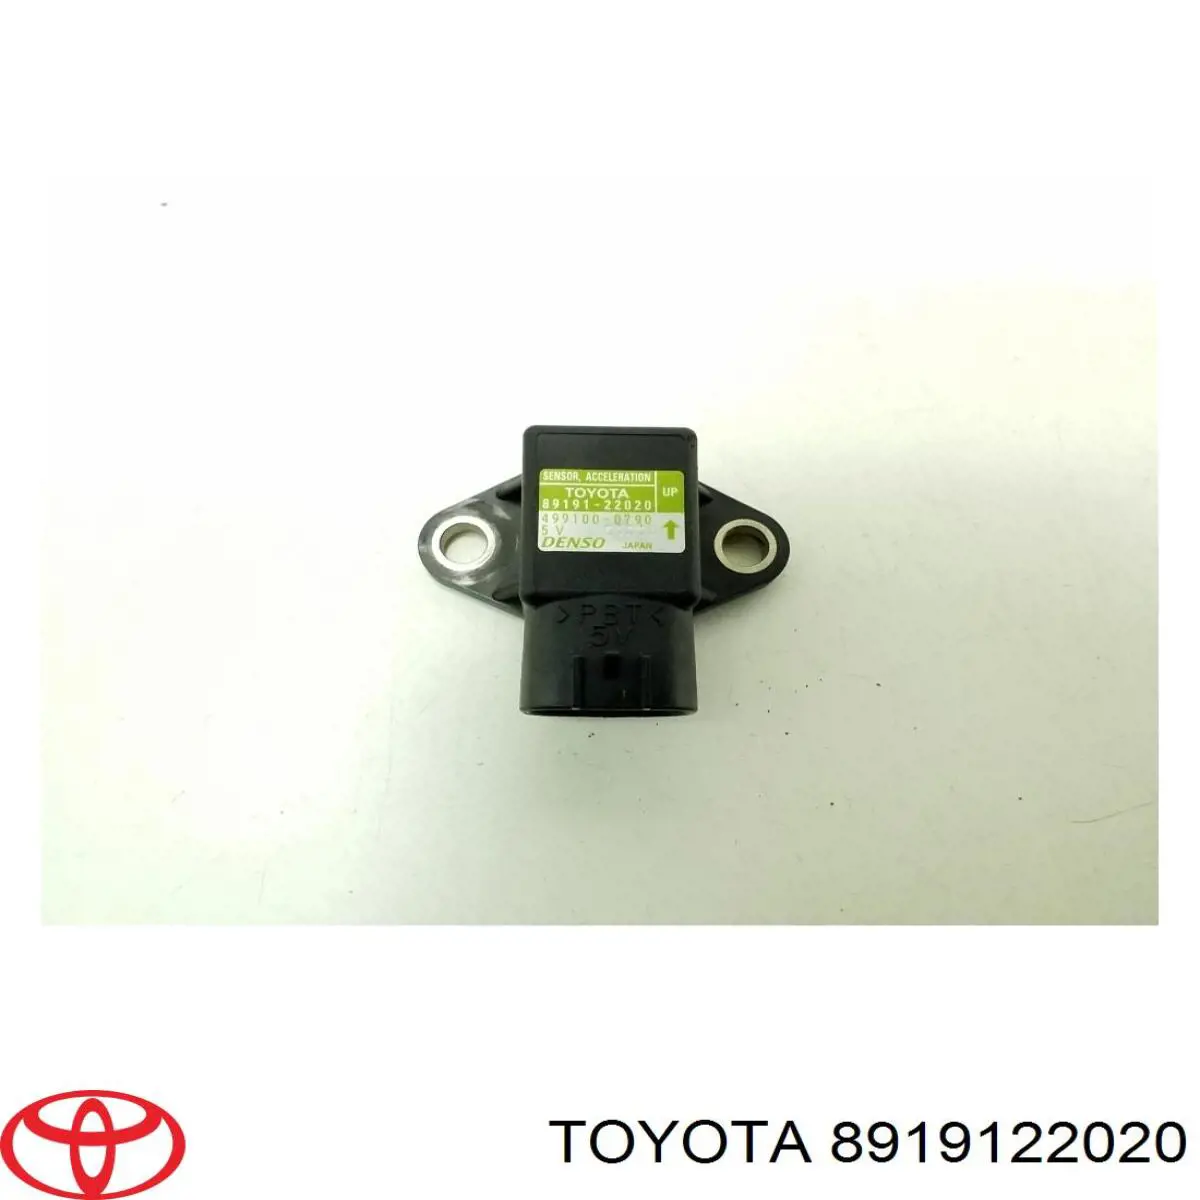 8919122020 Toyota датчик положения педали акселератора (газа)